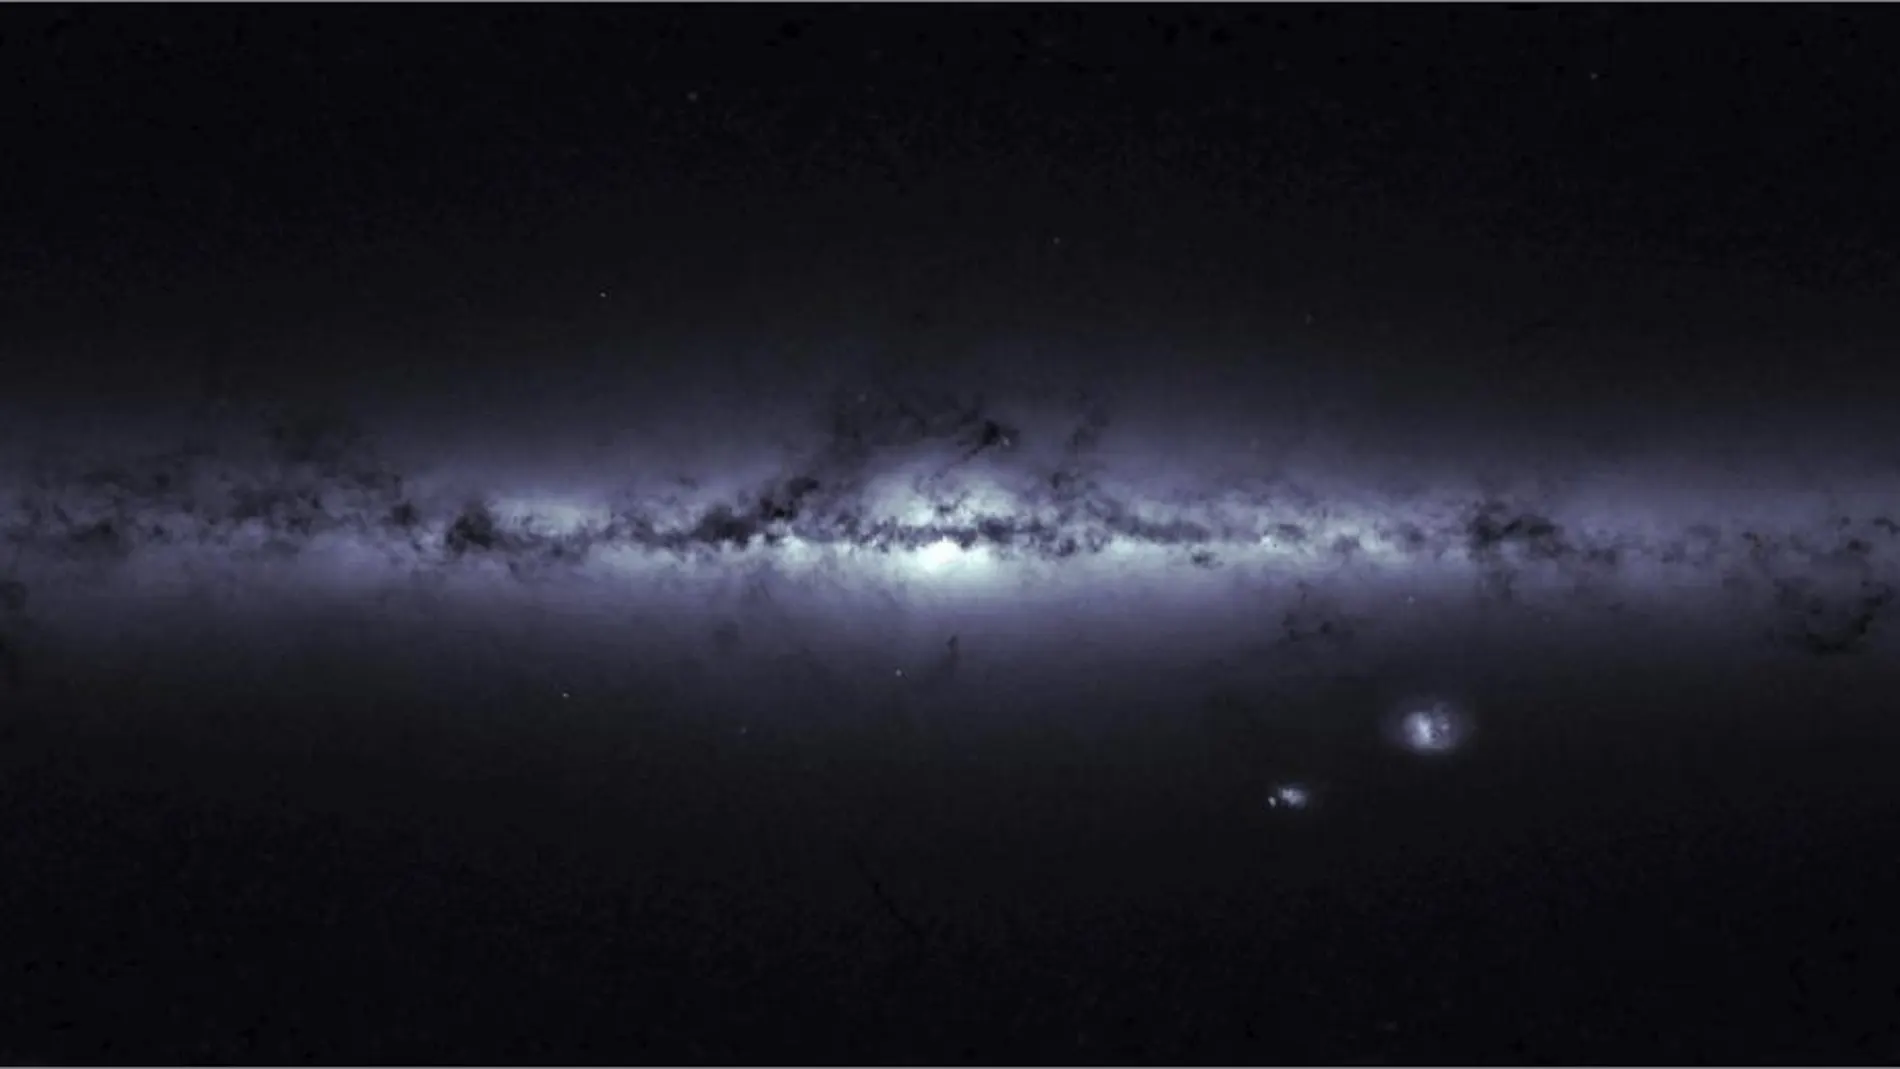 Imagen de la Vía Láctea tomada en 2015